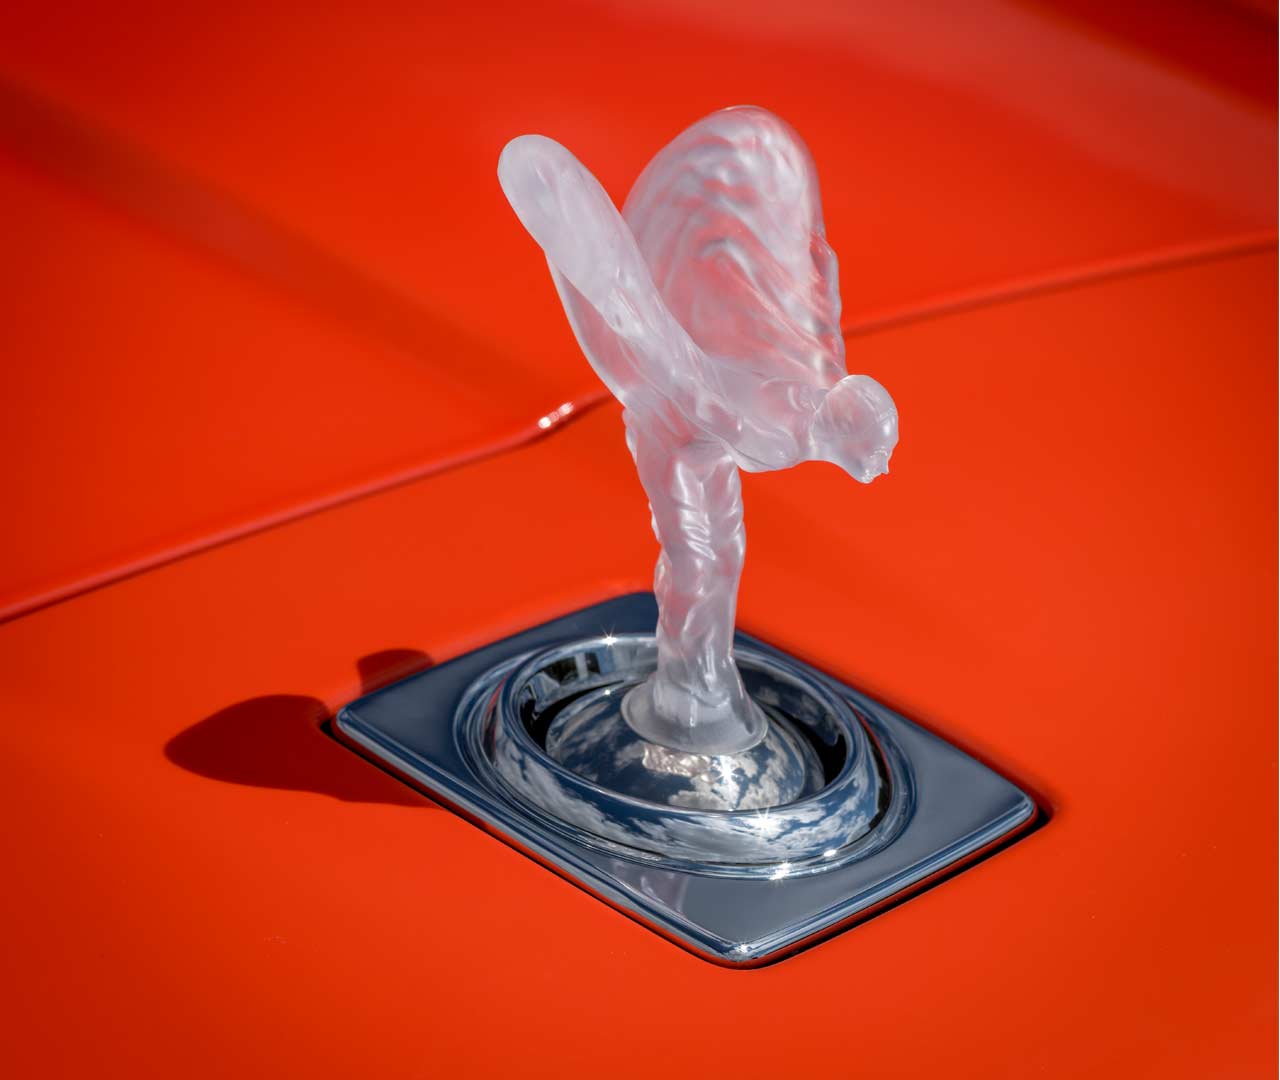 Bespoke Rolls-Royce Cullinan in Fux Orange - Spirit of Ecstacy